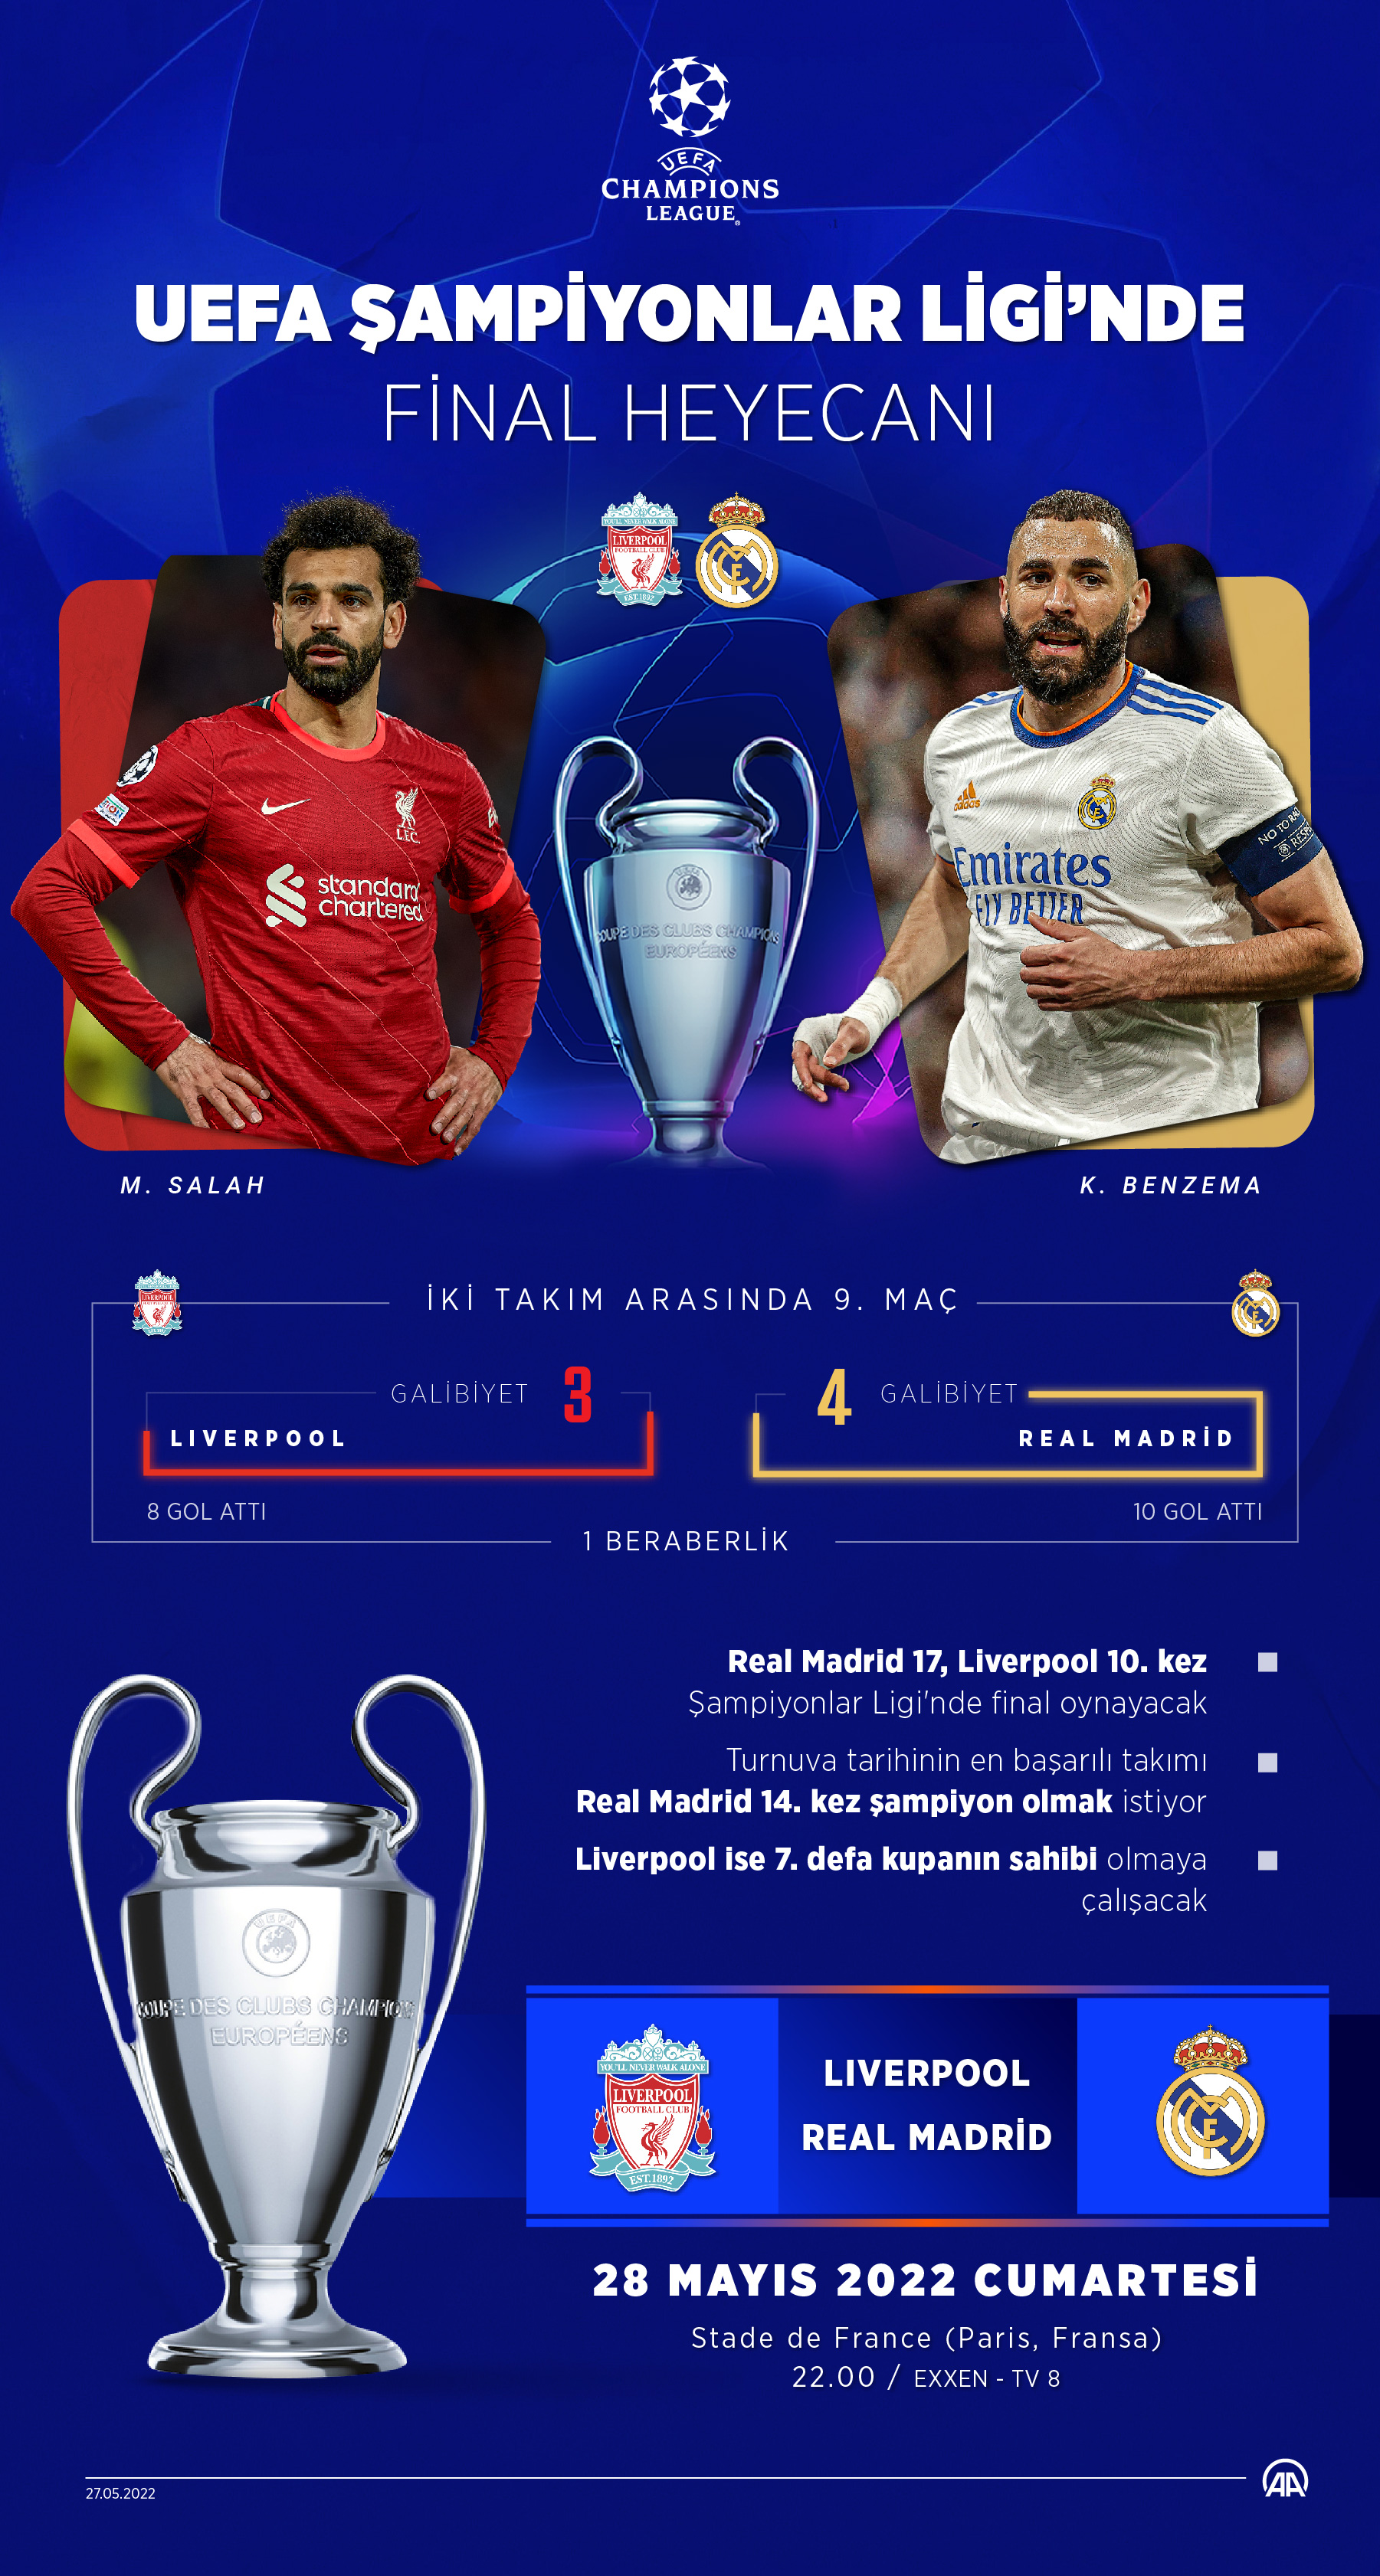 UEFA Şampiyonlar Ligi finali: Real Madrid - Liverpool maçı canlı izle | Real Madrid - Liverpool maçı Exxen, TV 8.5 canlı yayın izle linki